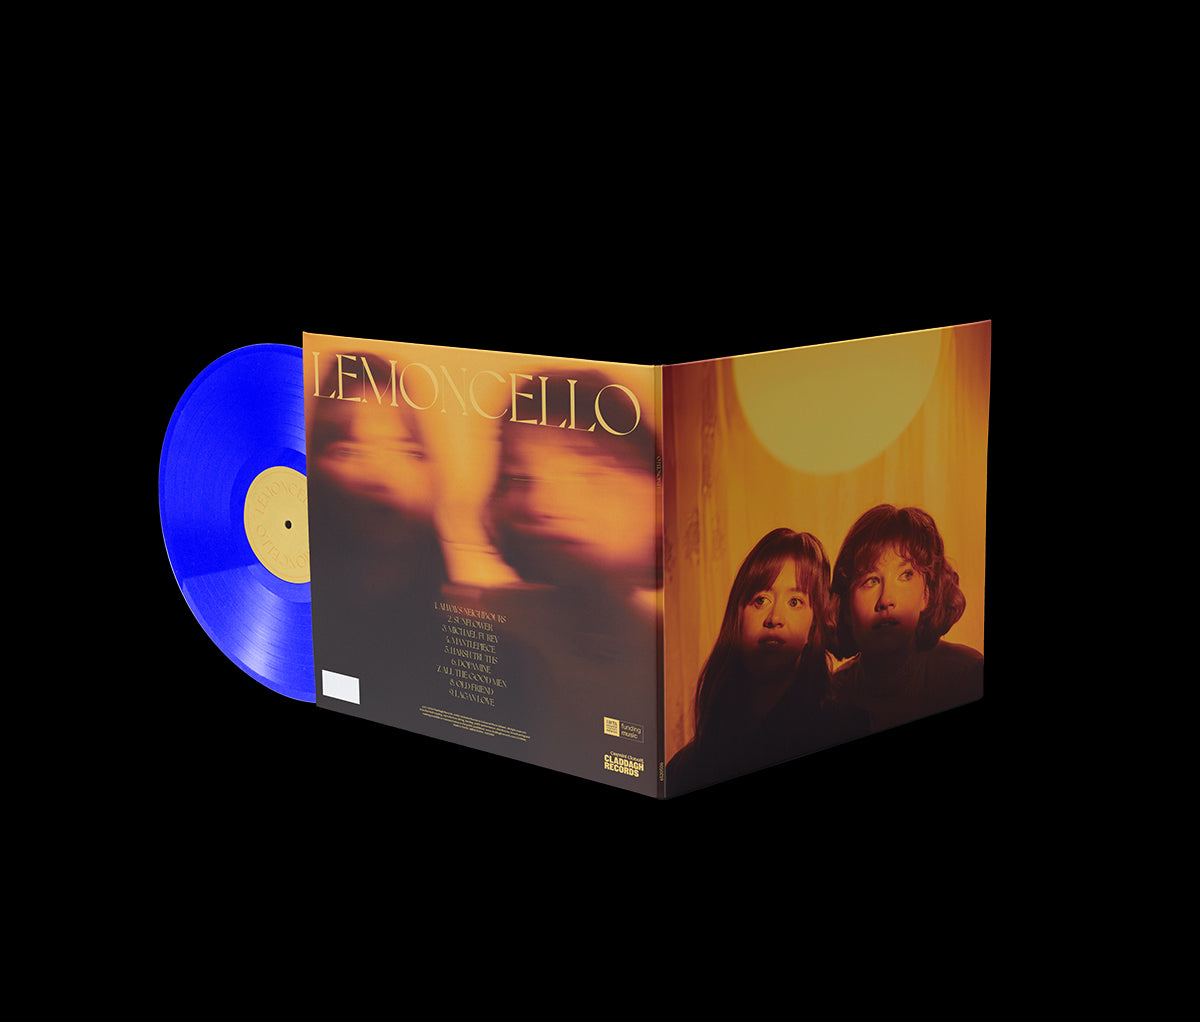 Lemoncello - Lemoncello: Blue Vinyl LP